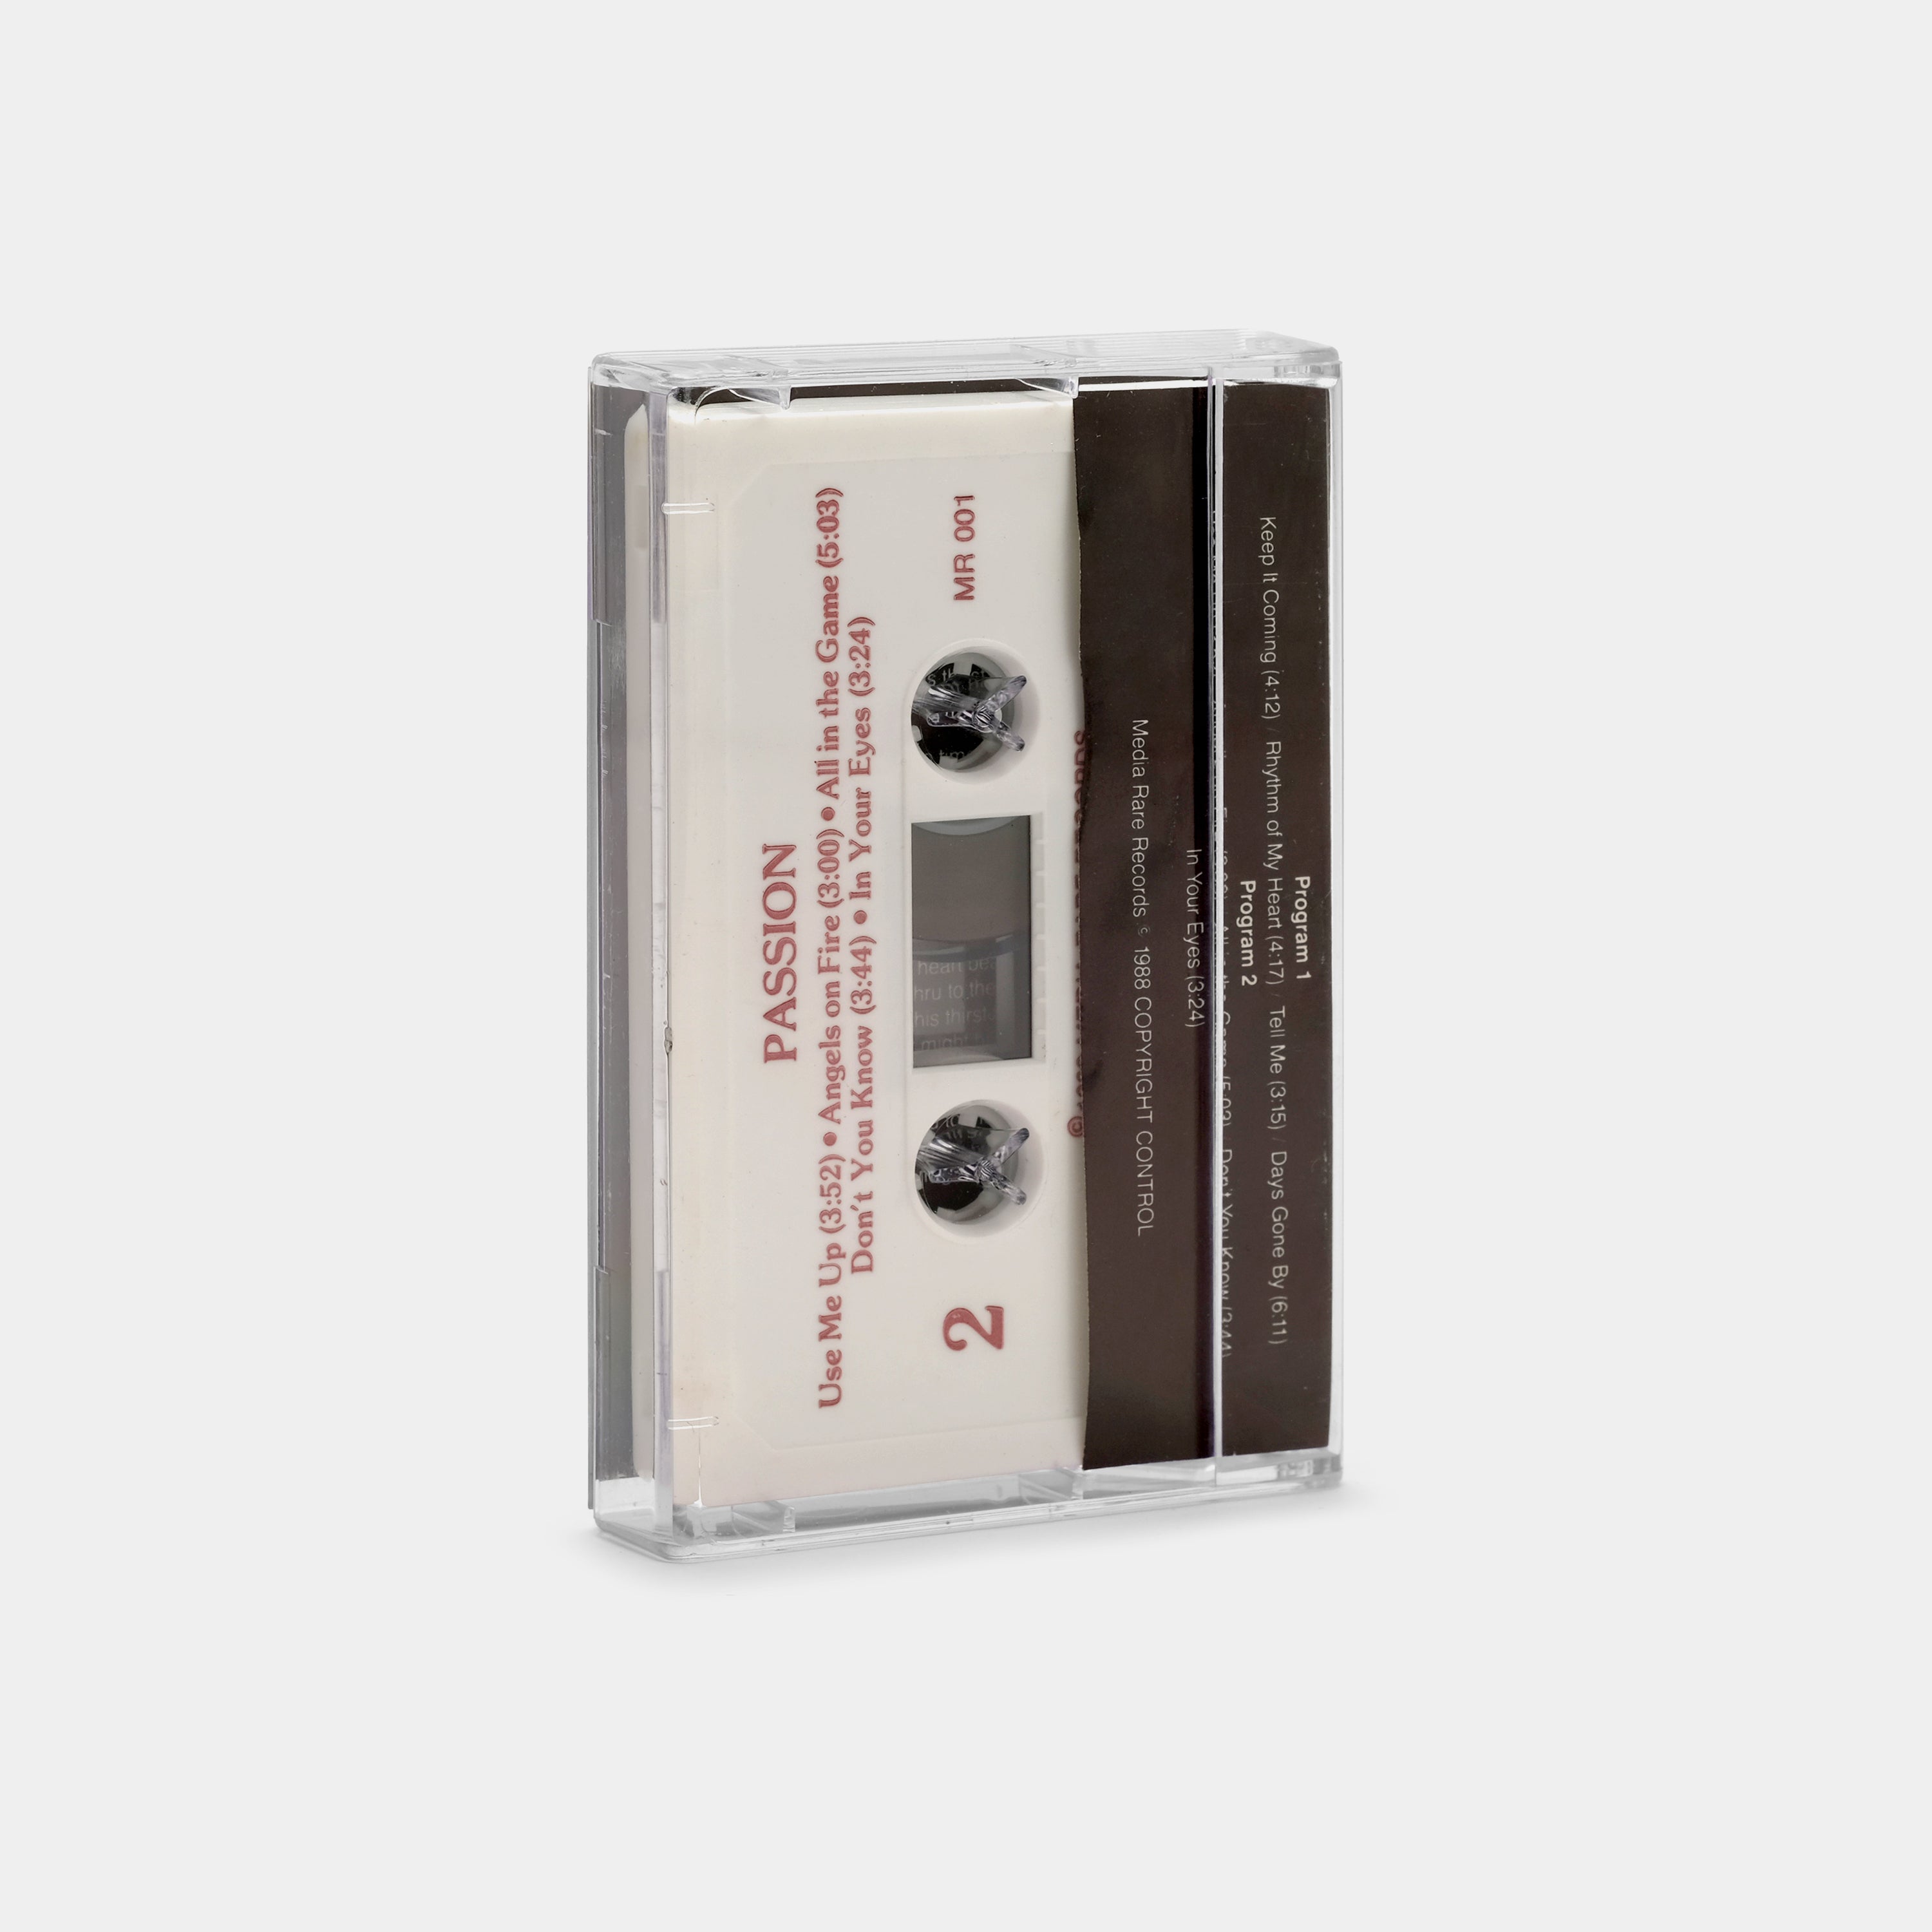 Passion - Passion Cassette Tape